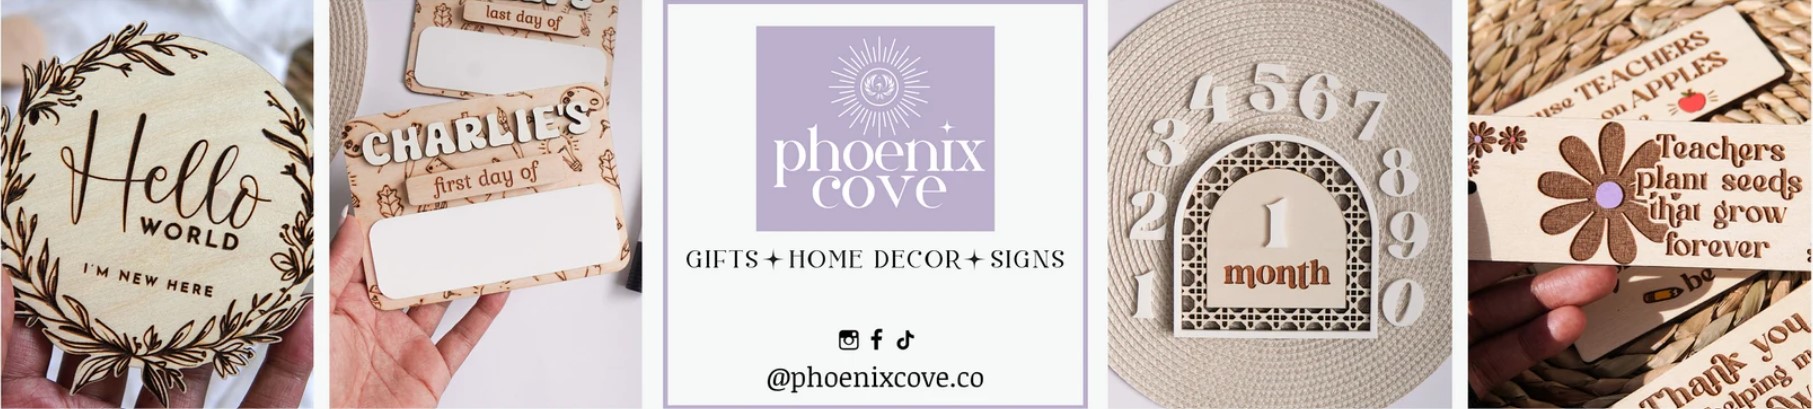 Phoenix Cove